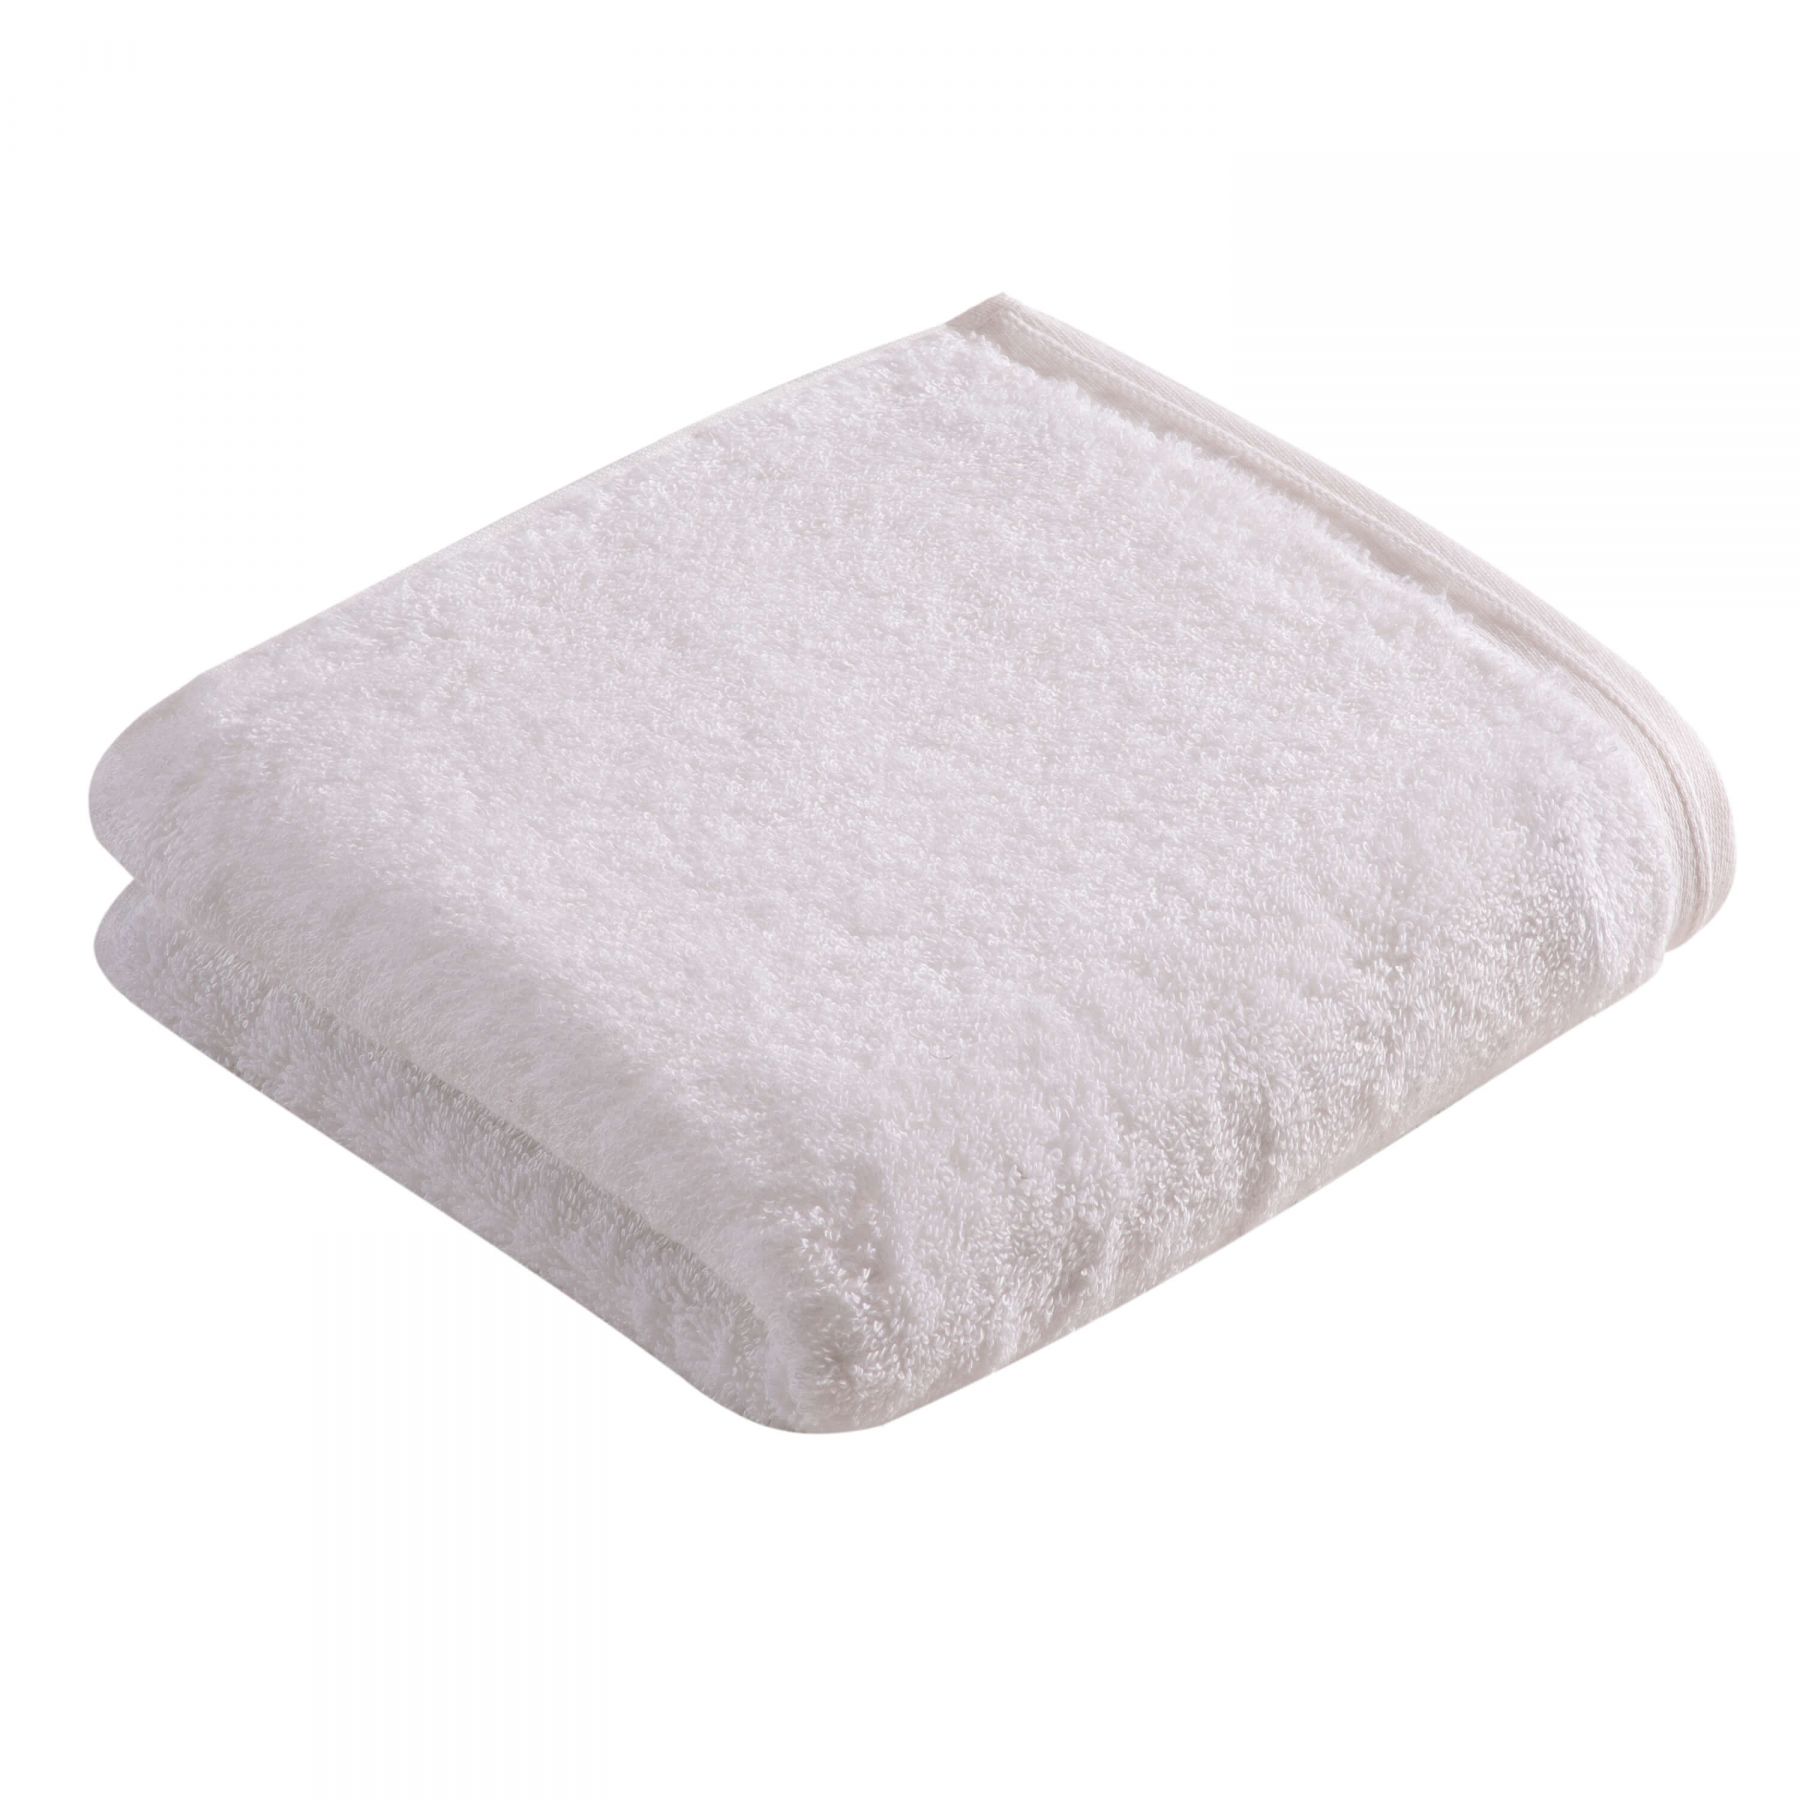 Элитное полотенце Vegan Life White ☞ Размер: 60 x 110 см